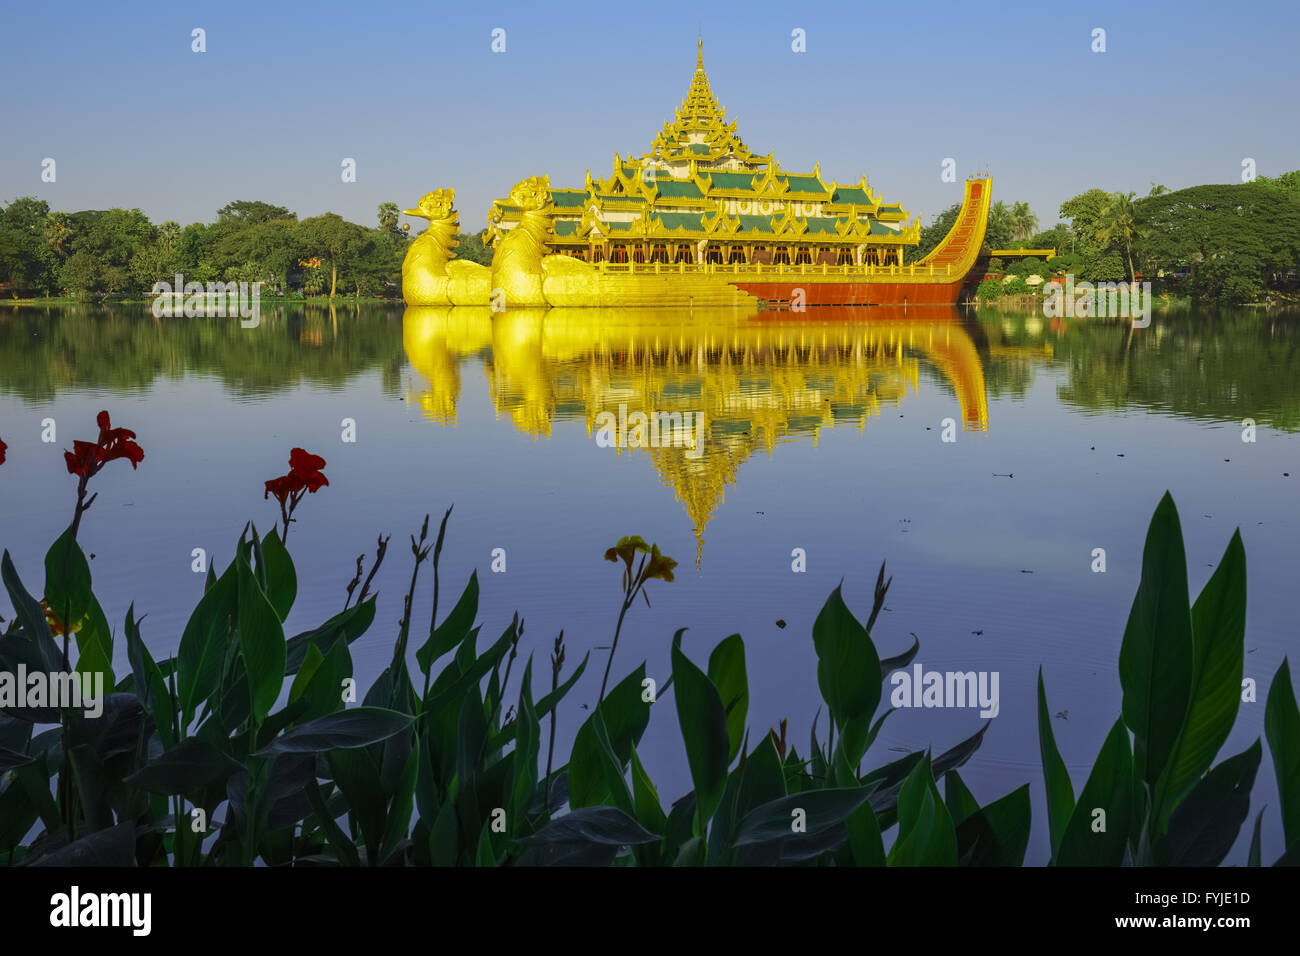 Karaweik Palace at Kandawgyi Lake, Yangon, Myanmar Stock Photo